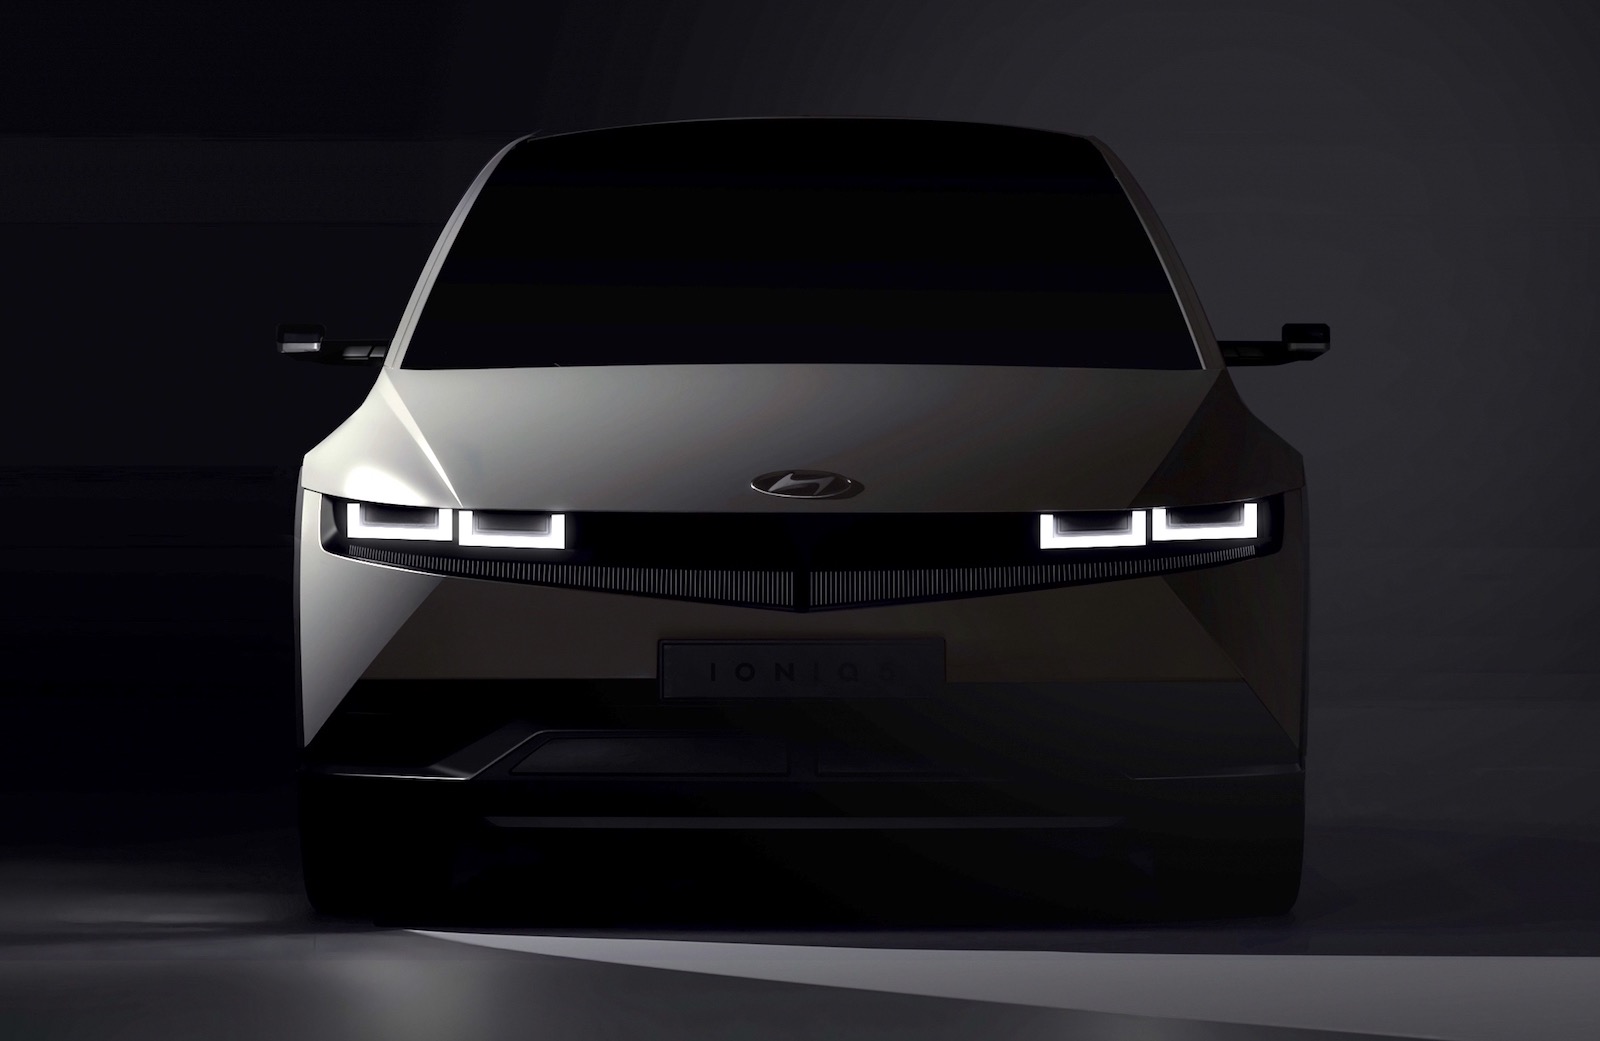 Hyundai IONIQ 5 preview confirms retro design from 45 concept